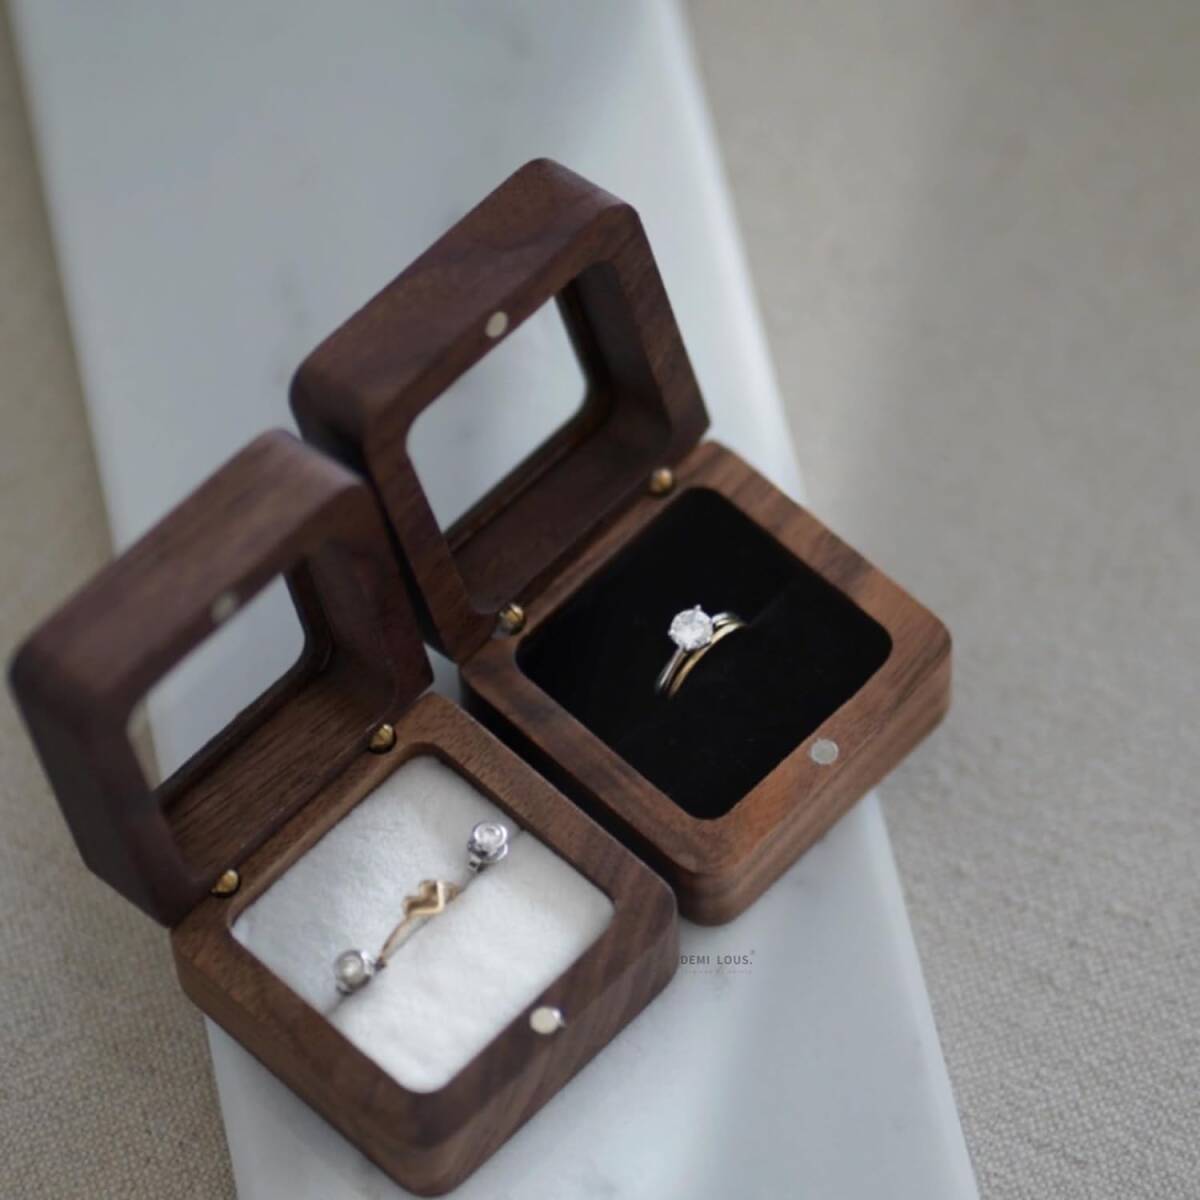 リングケース 木製 くるみ 1個用内張り黒 指輪ケース 婚約指輪 持ち運び リングボックス 高級素材 結婚お祝い プレセント ガラス